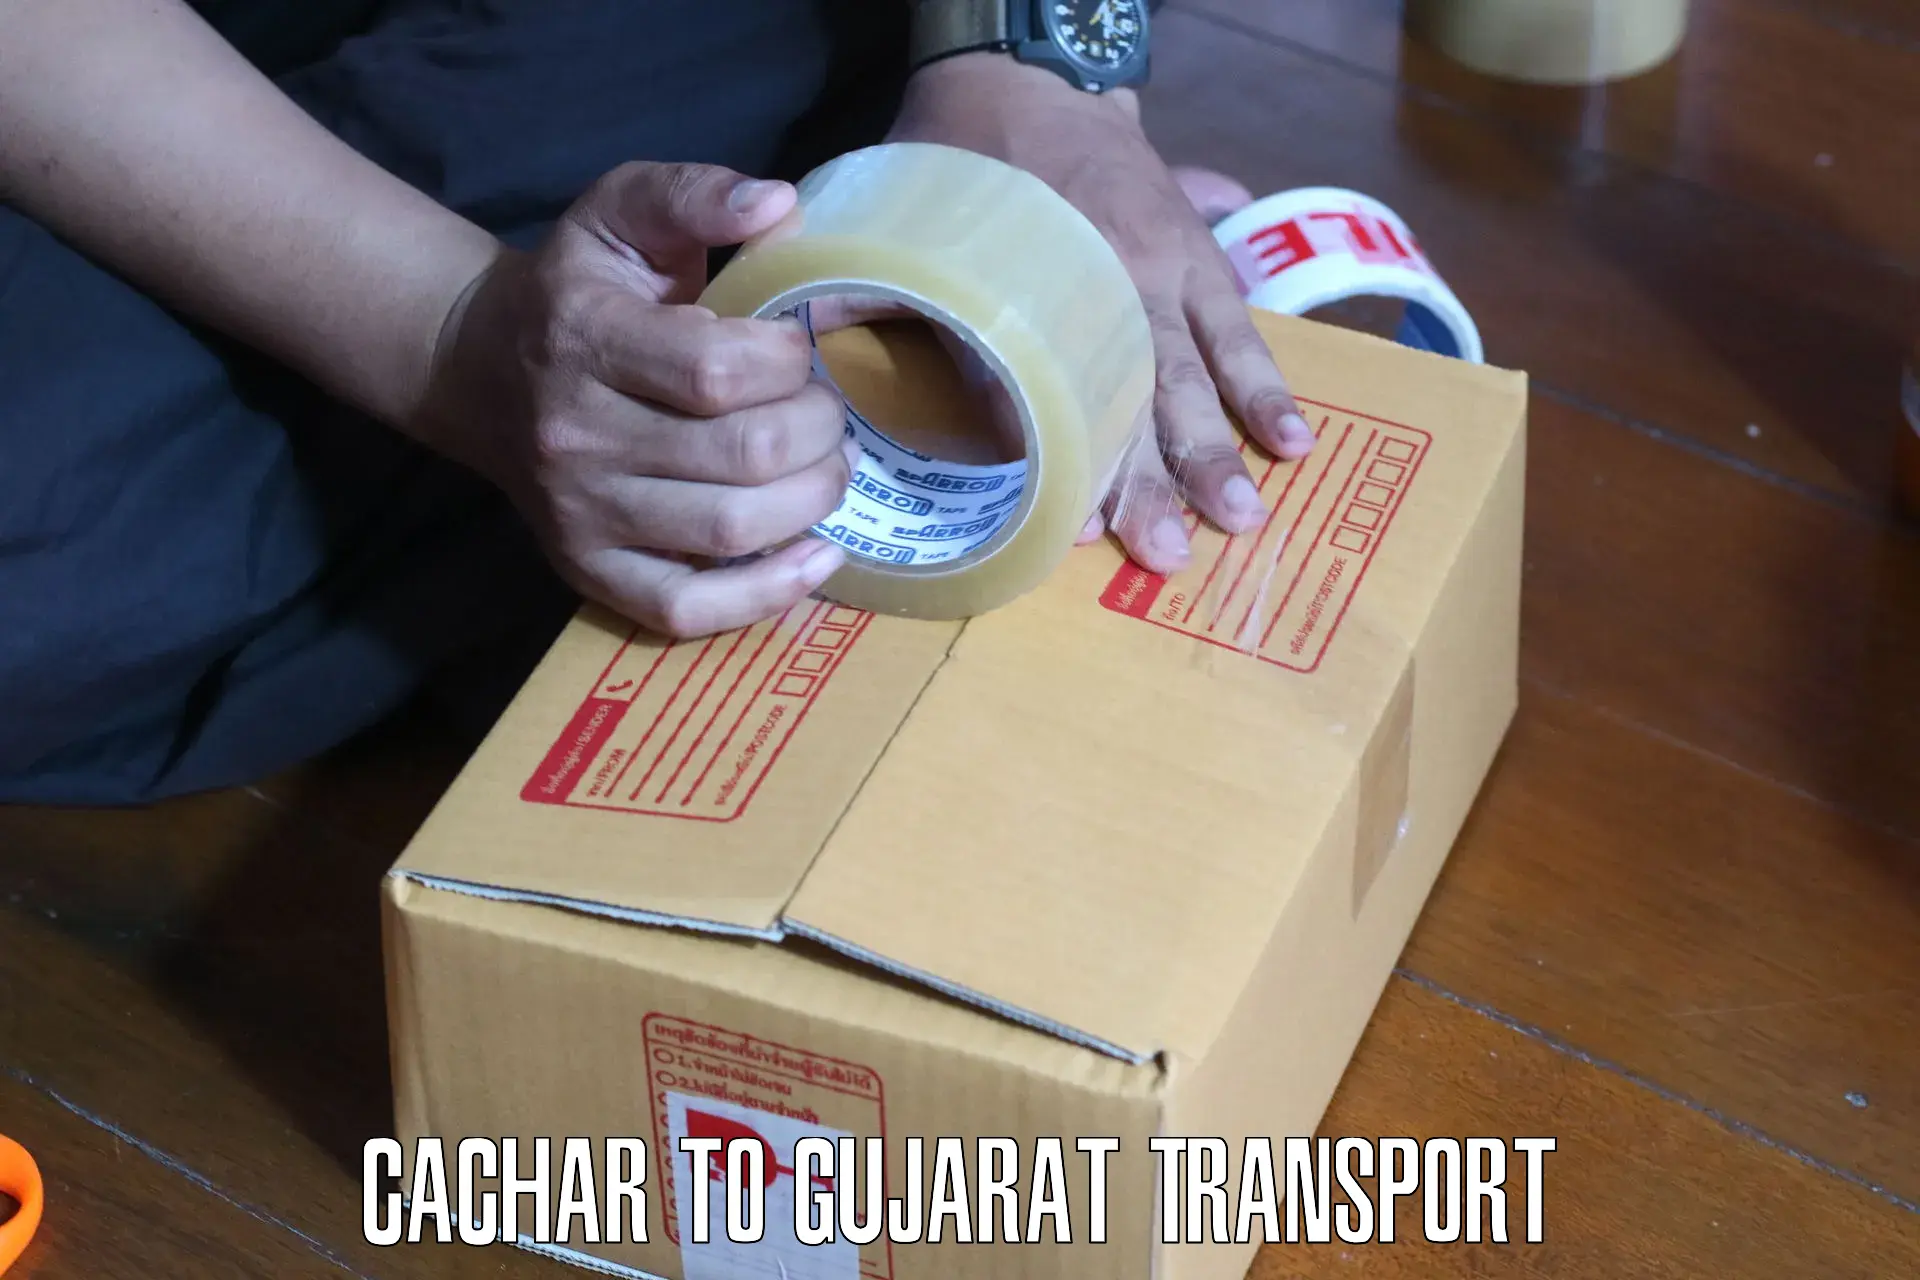 Pick up transport service Cachar to Kapadvanj